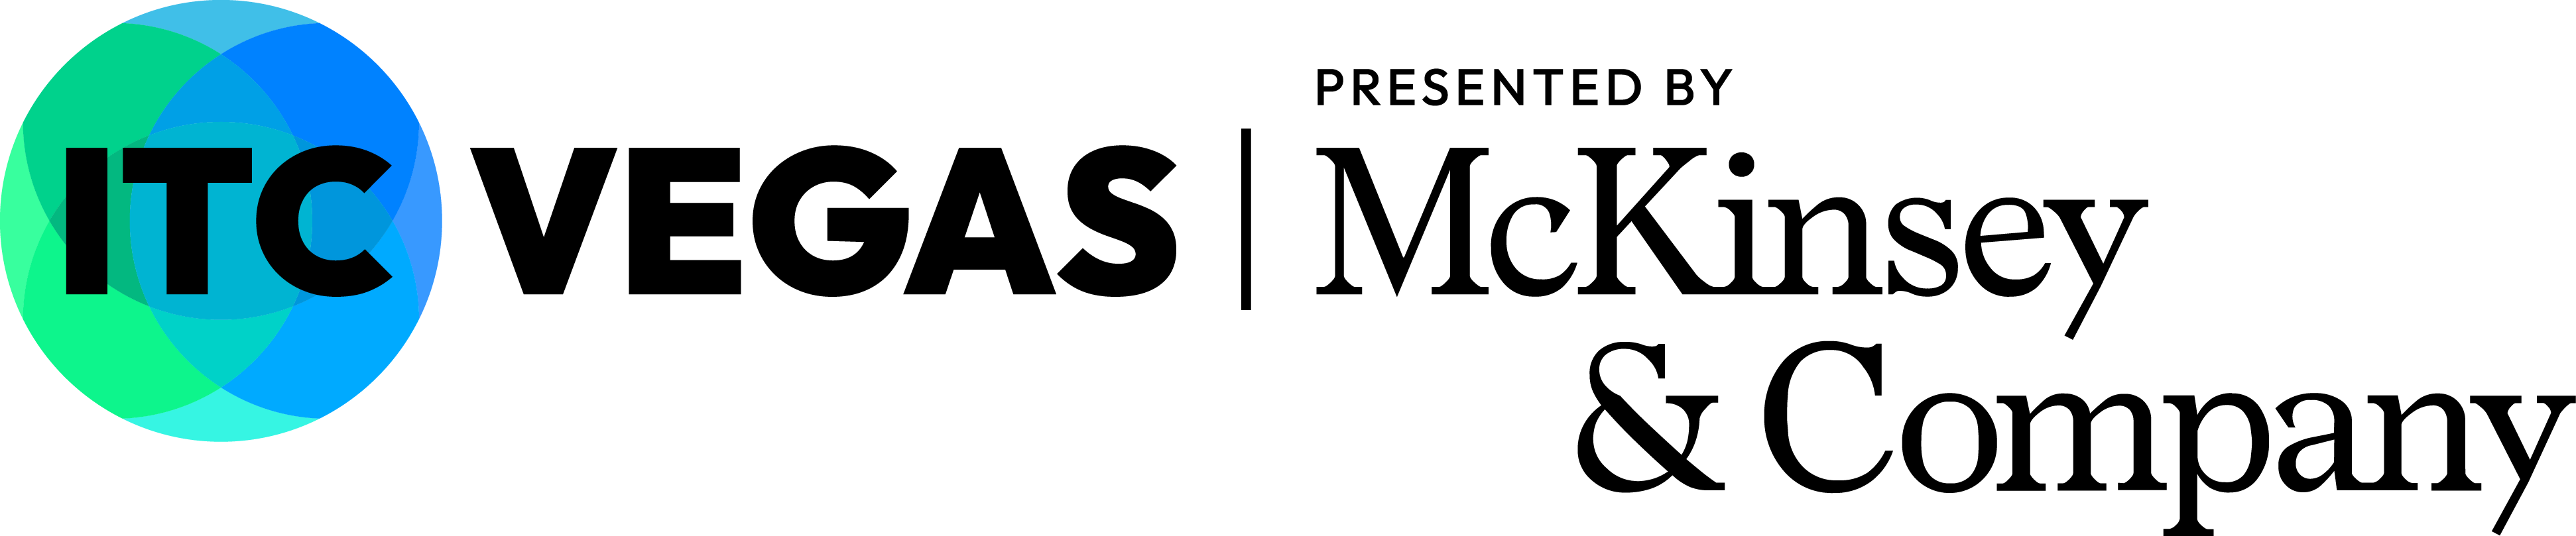 ITC Vegas logo